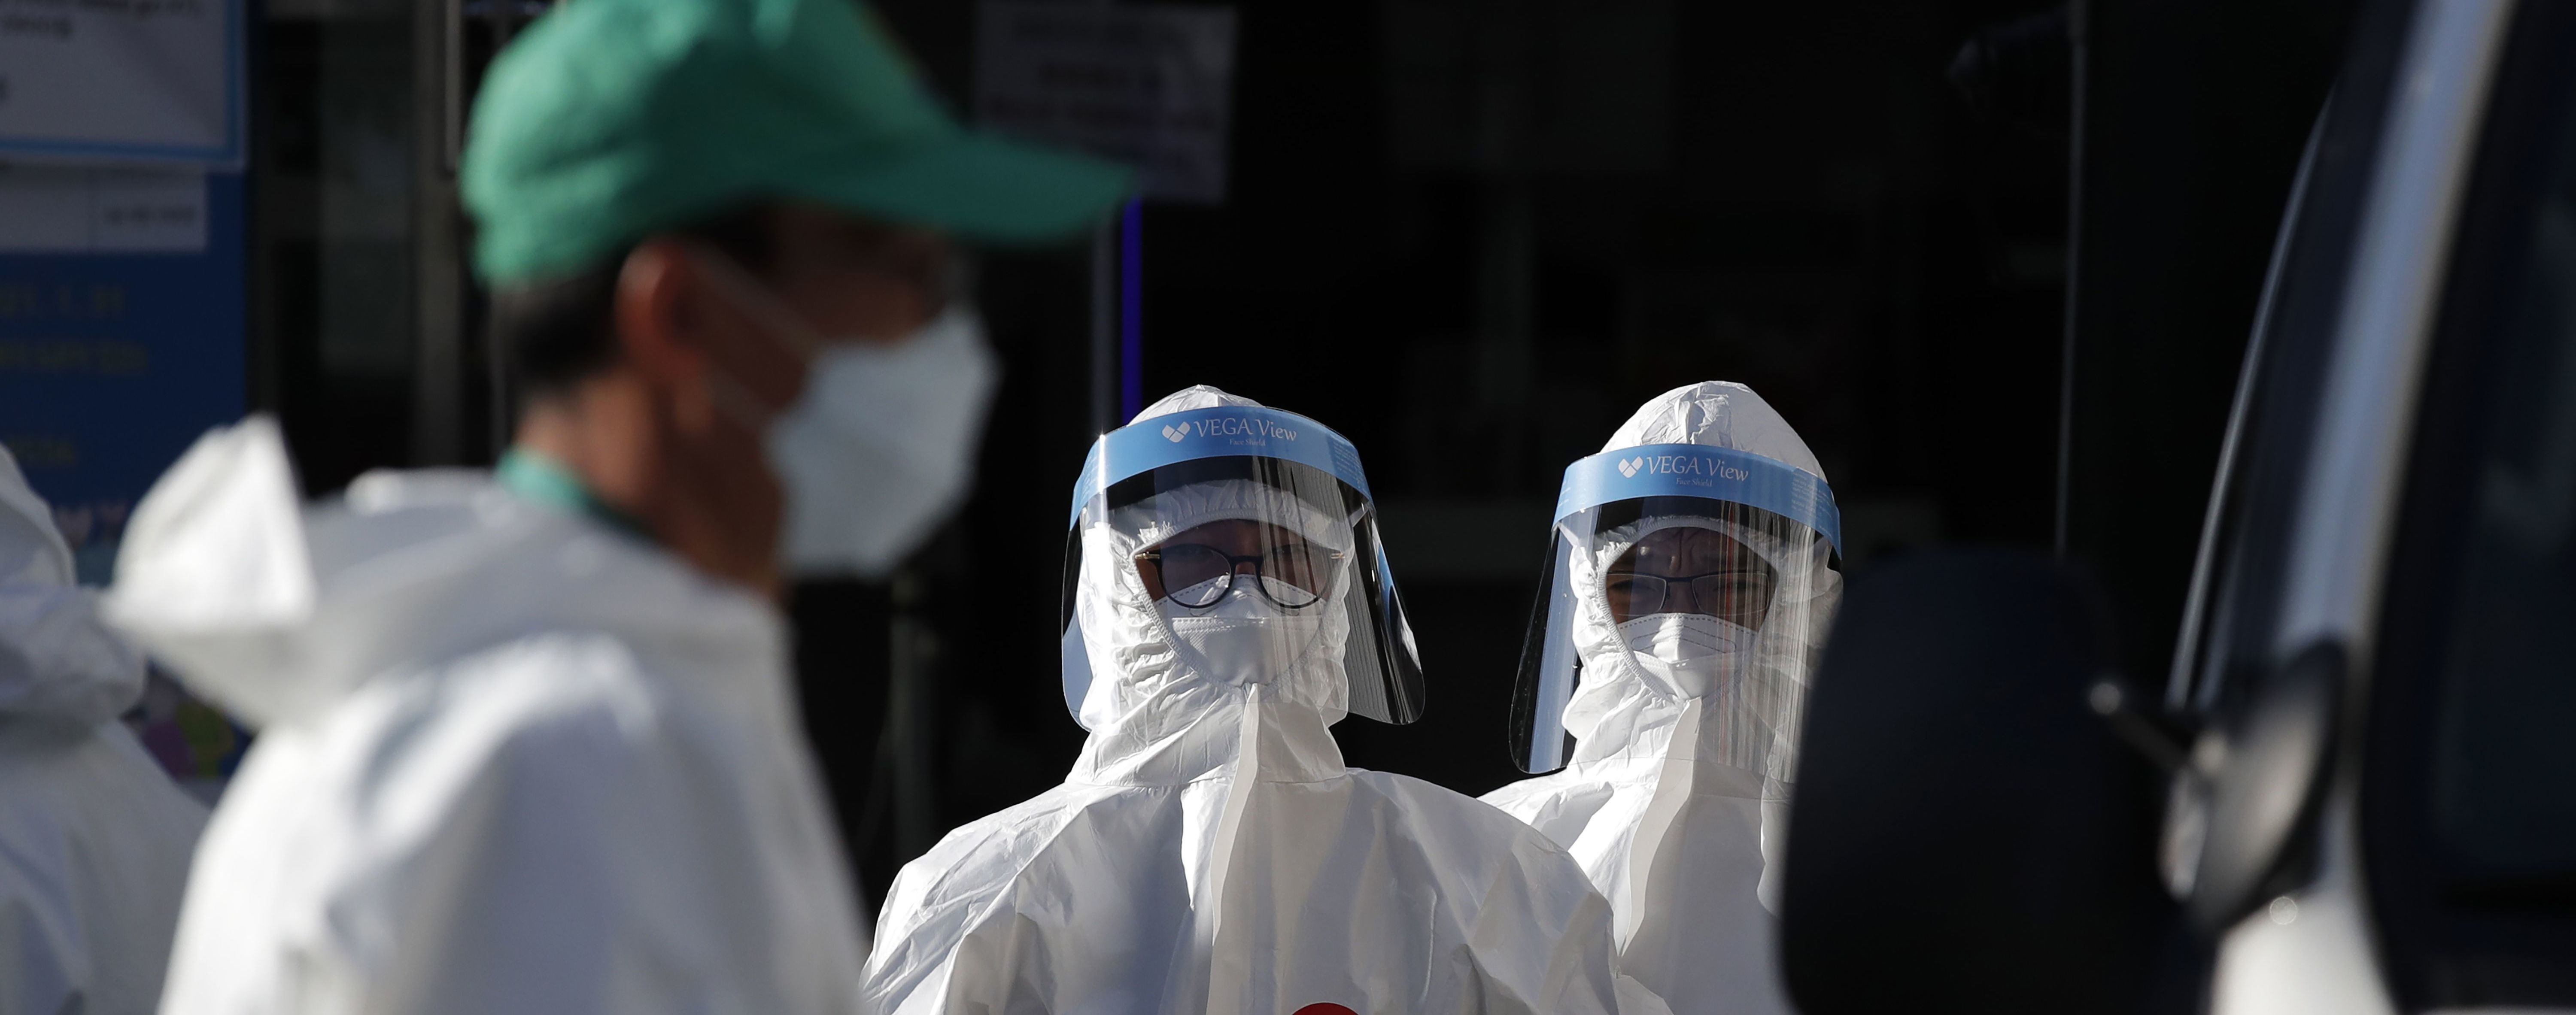 В ВОЗ заявили, что из-за пандемии коронавируса в обществе растет усталость и апатия